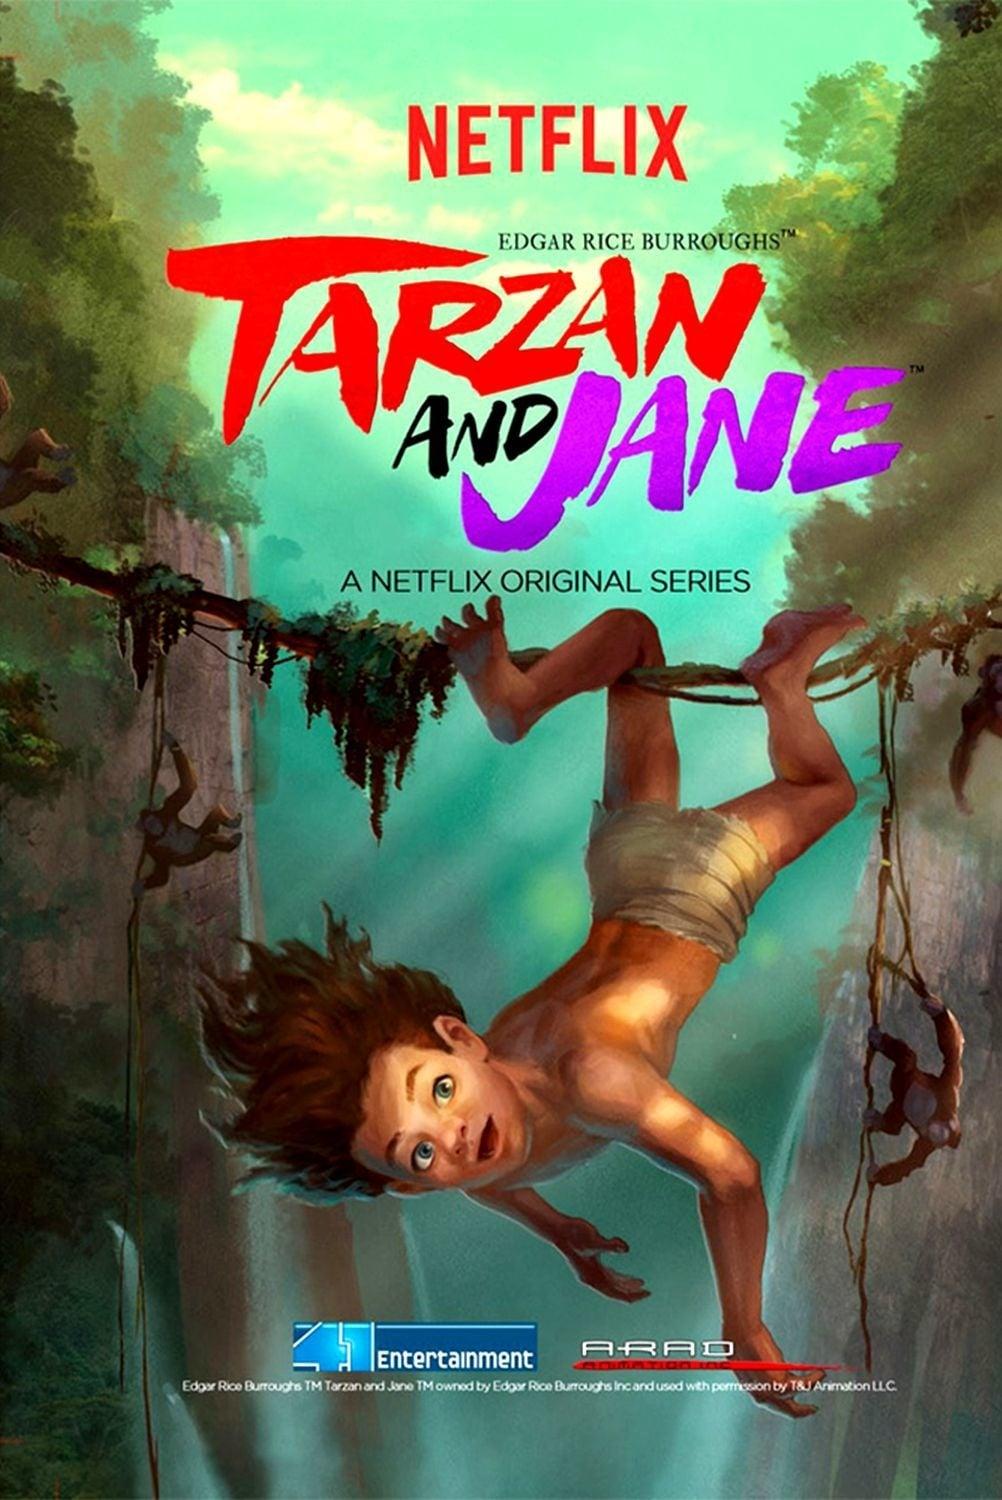 Edgar Rice Burroughs' Tarzan and Jane poster